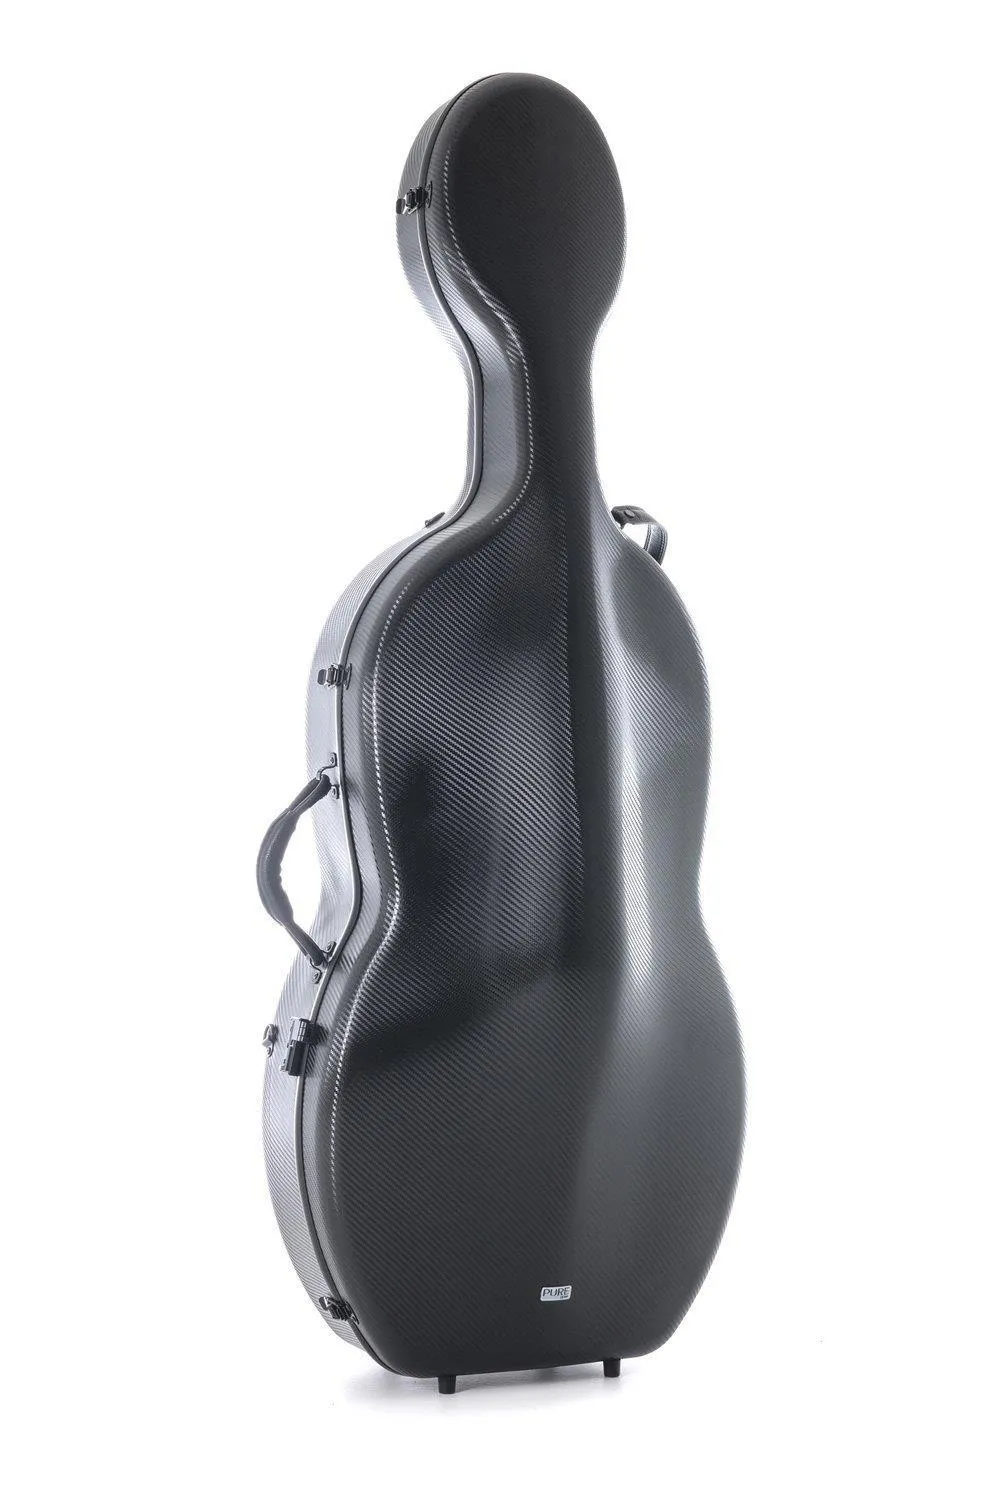 Vorder-Ansicht eines GEWA Pure Polycarbonat 4/4 Celloetuis in der Farbe Schwarz